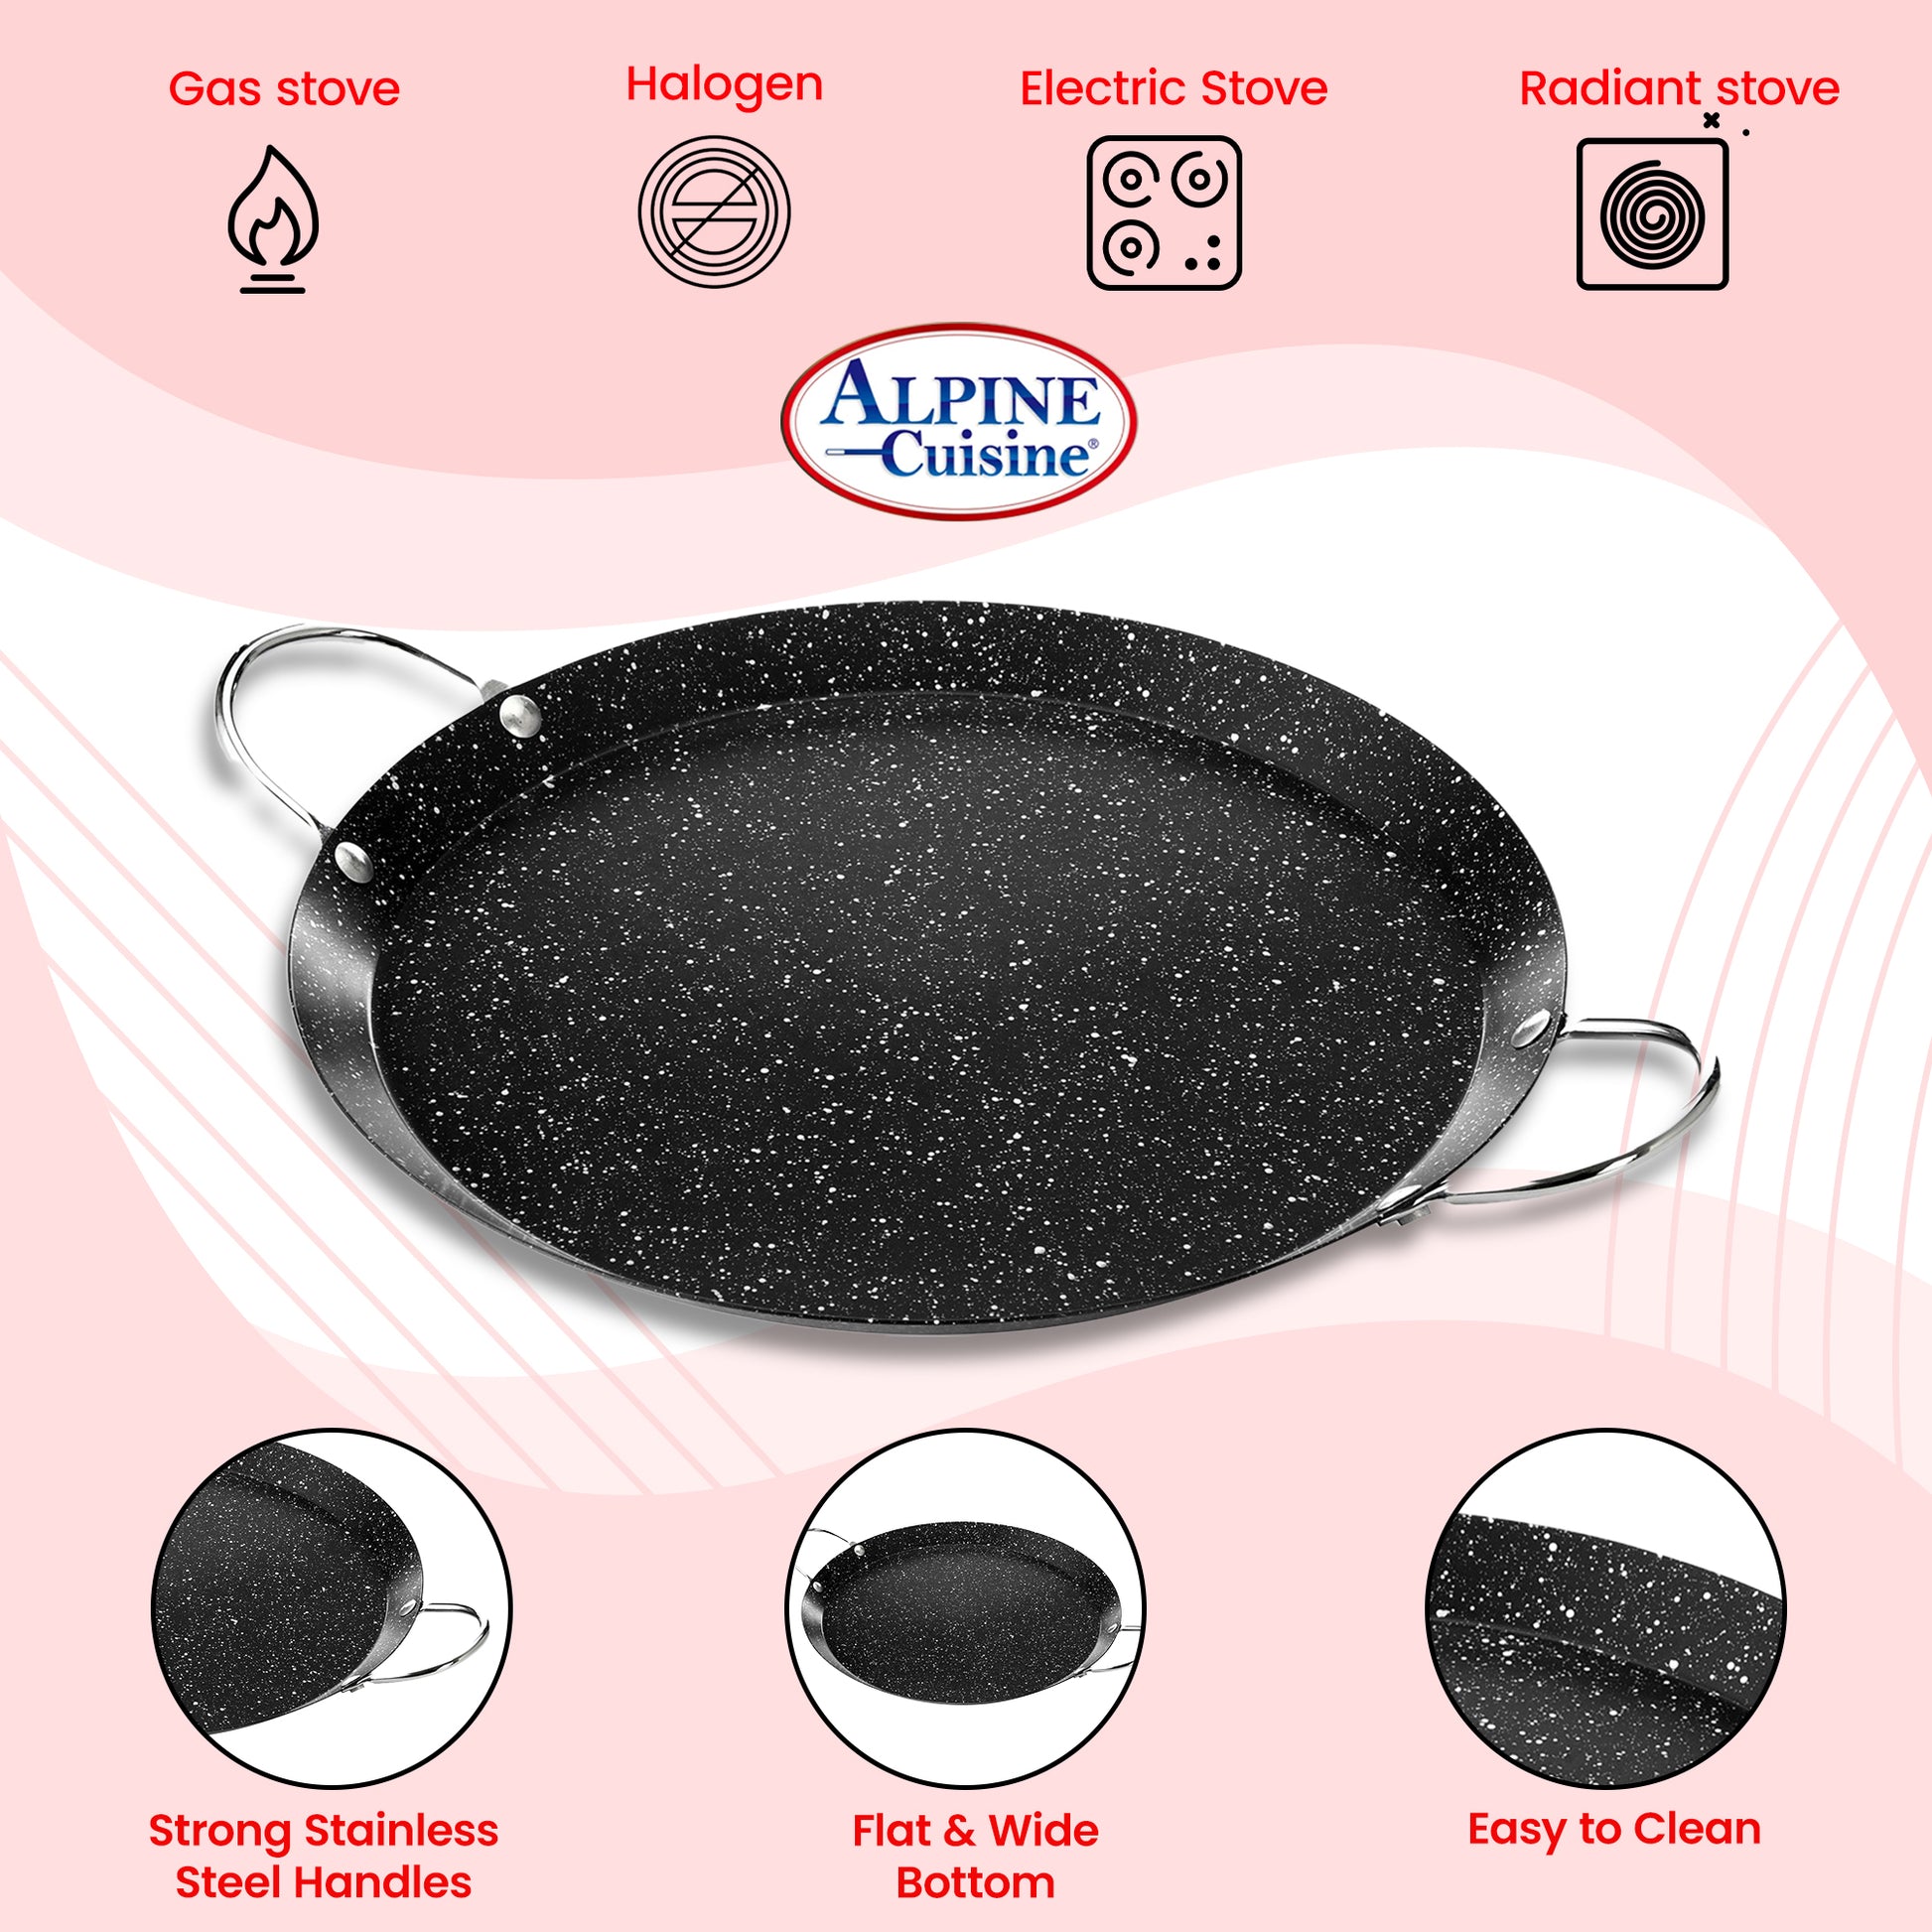 Alpine Cuisine Nonstick Round Comal 9.5-Inch - Black Carbon Steel Tort